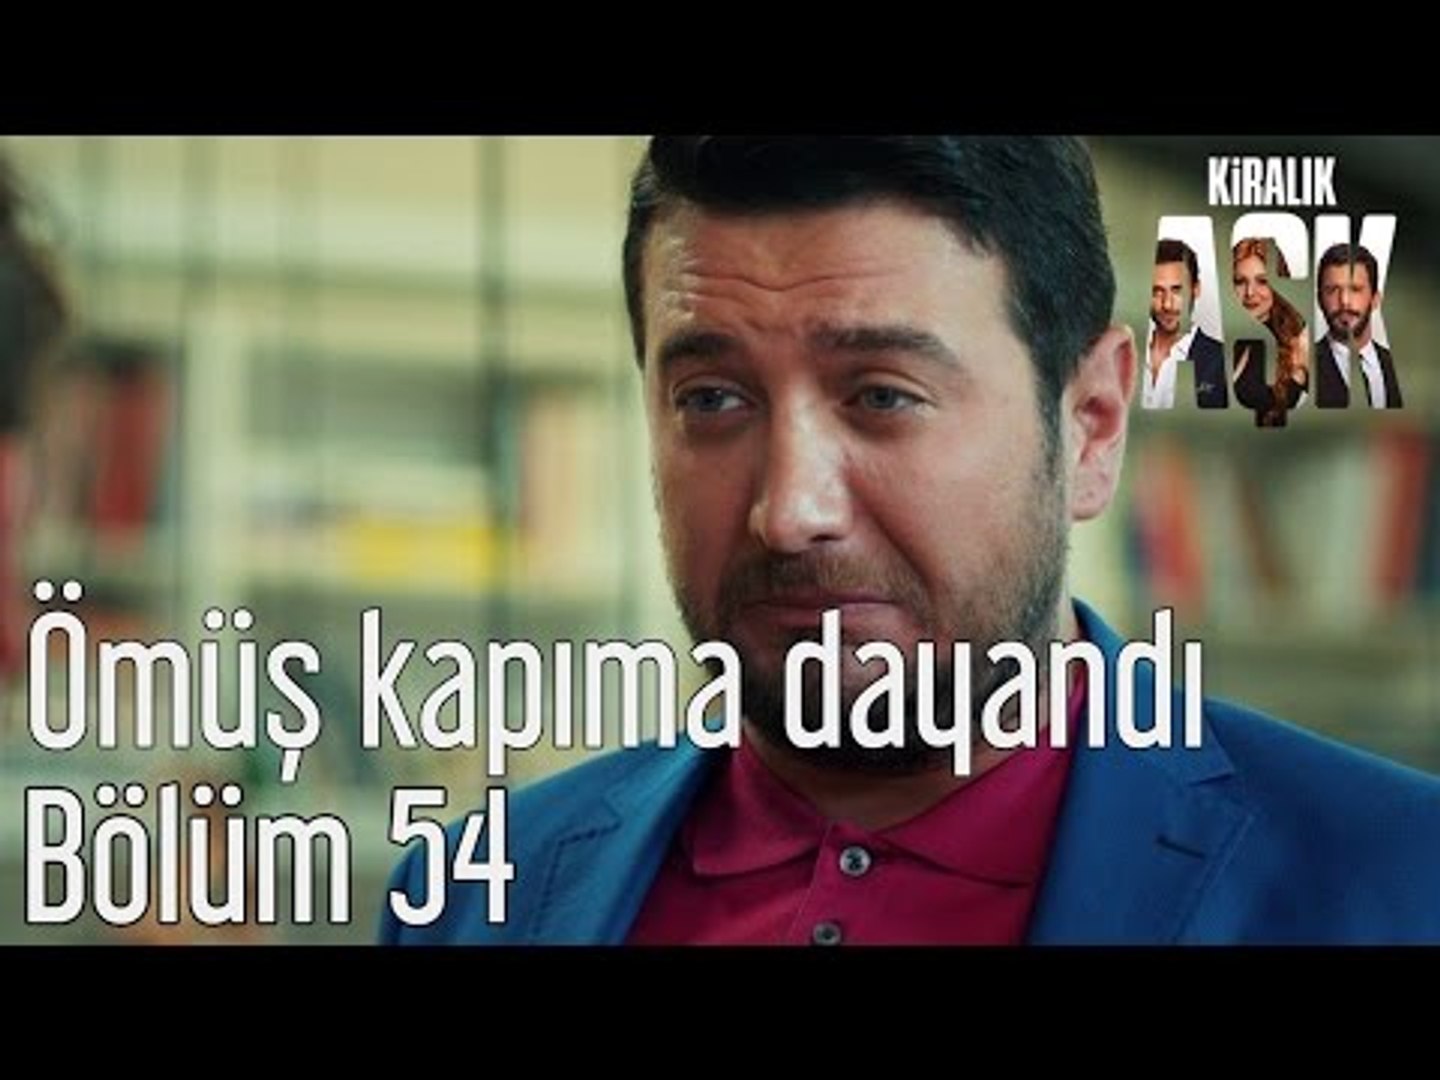 Kiralık Aşk 54. Bölüm - Ömüş Kapıma Dayandı - Dailymotion Video